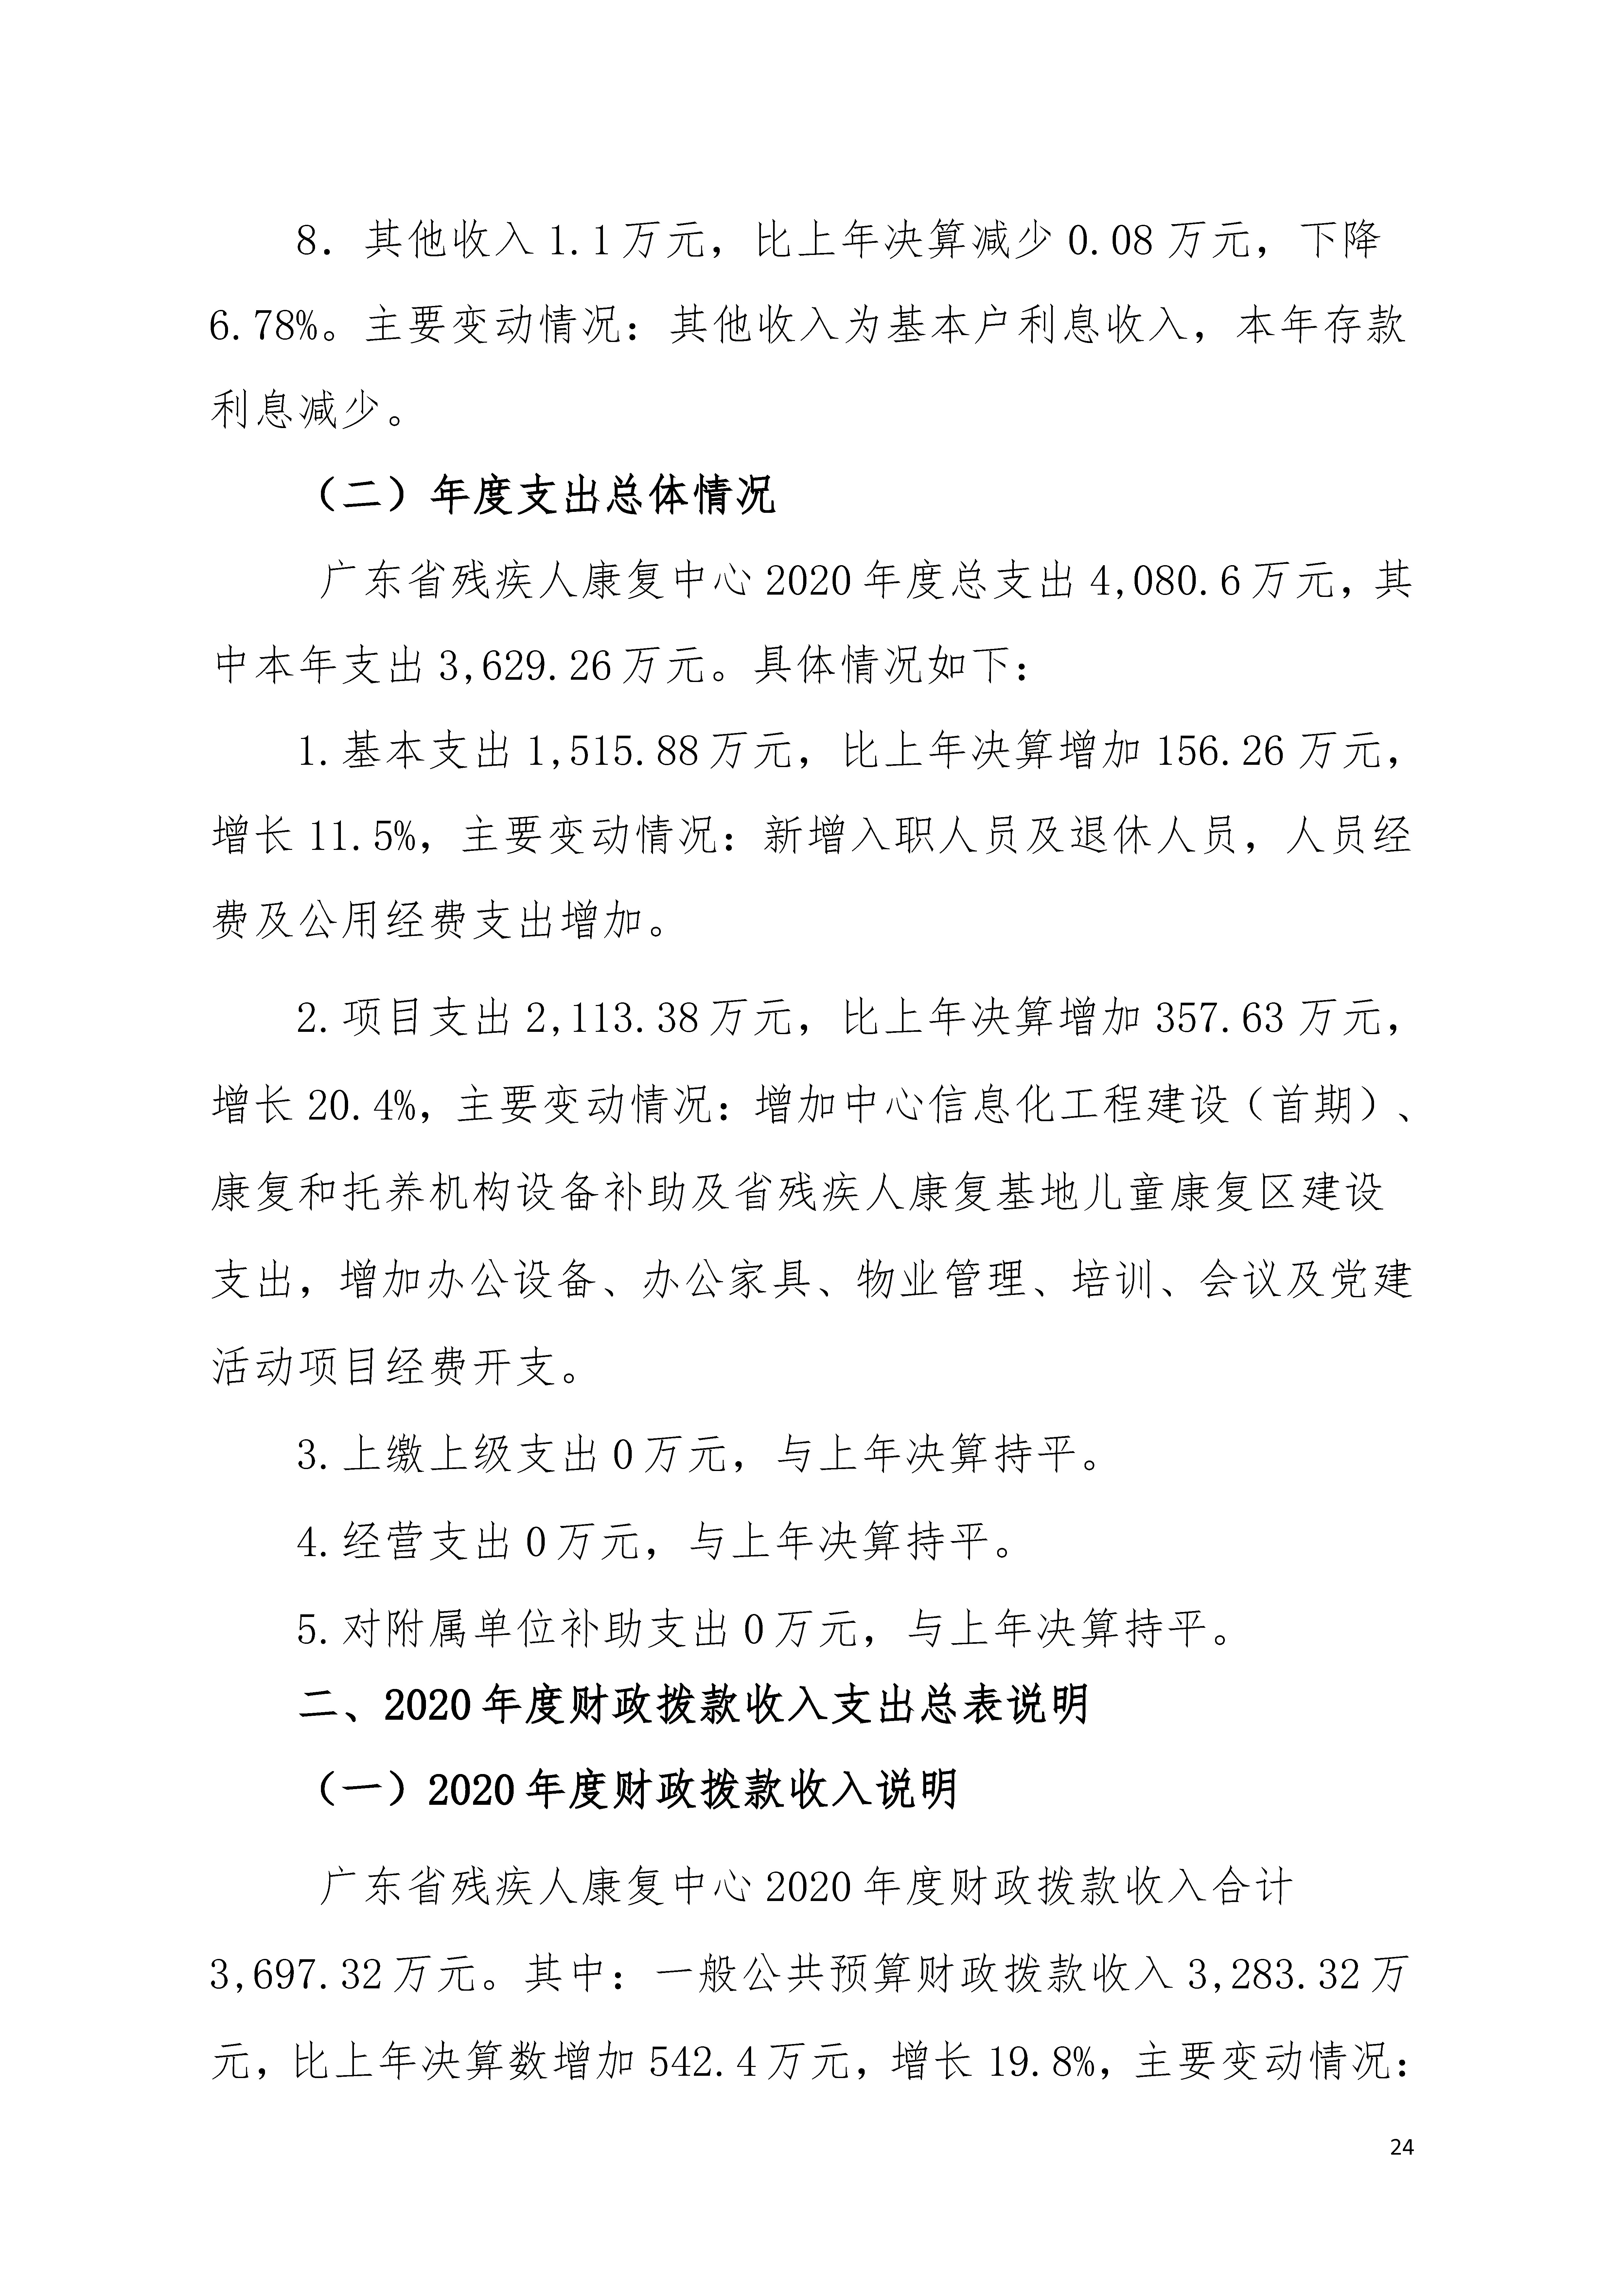 2020年广东省残疾人康复中心部门决算_页面_24.jpg